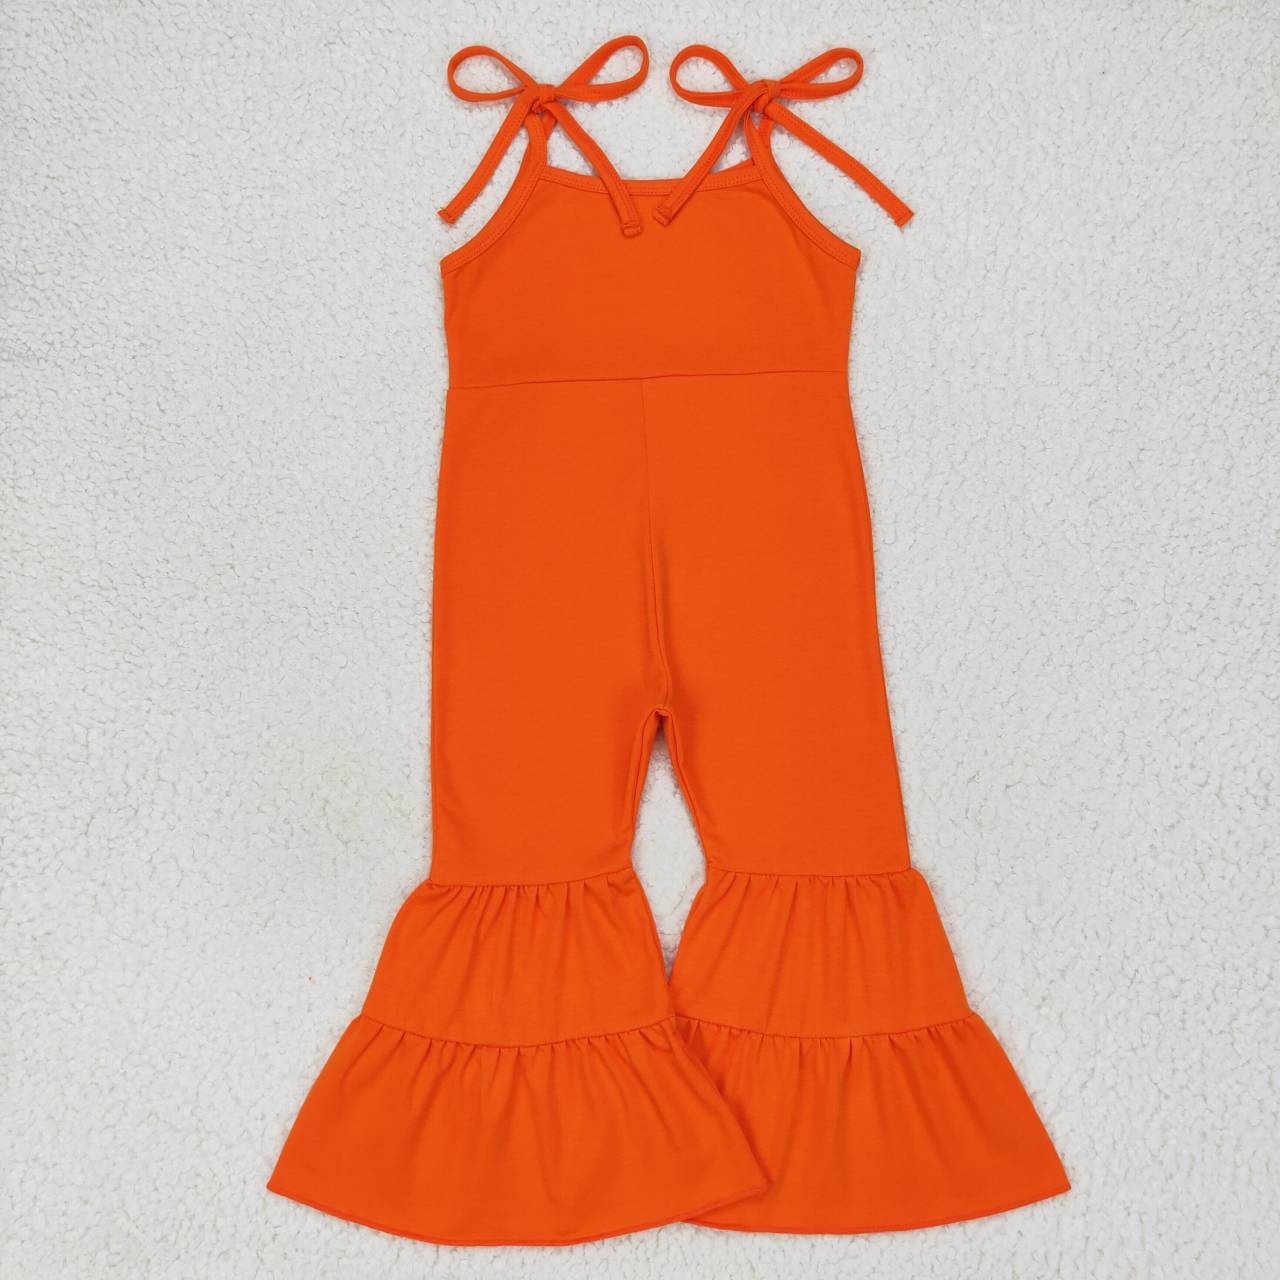 SR0451 Orange suspender jumpsuit